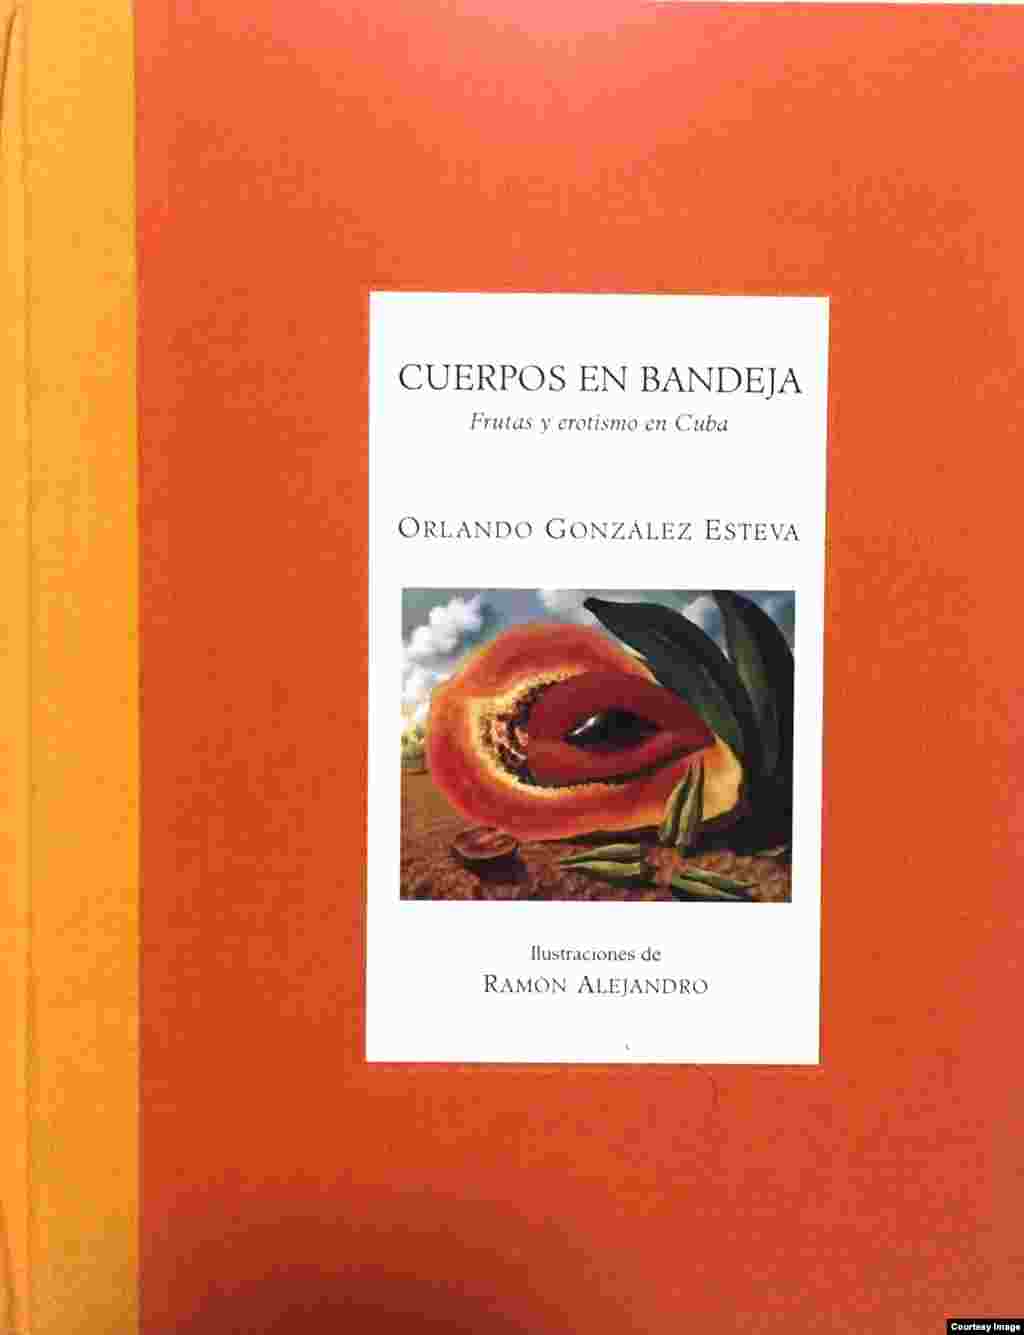 "Cuerpos en bandeja", Frutas y erotismo en Cuba, Orlando González Esteva (Ilustrac. Ramón Alejandro), Edit. Libros de la espiral, México, 1998.